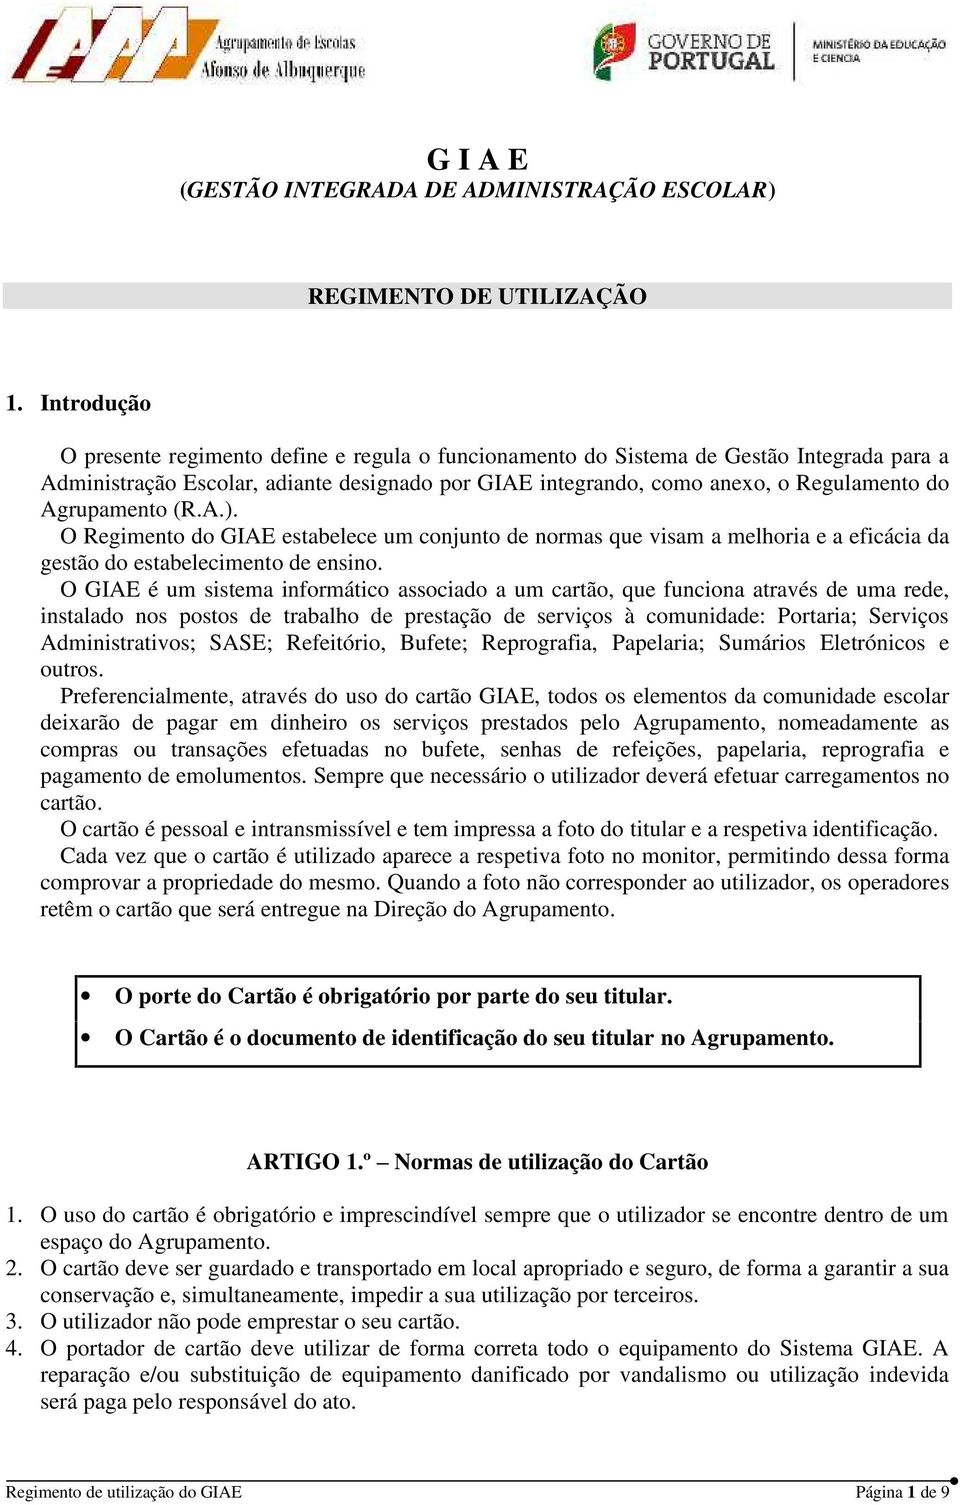 G I A E (GESTÃO INTEGRADA DE ADMINISTRAÇÃO ESCOLAR) - PDF Download grátis